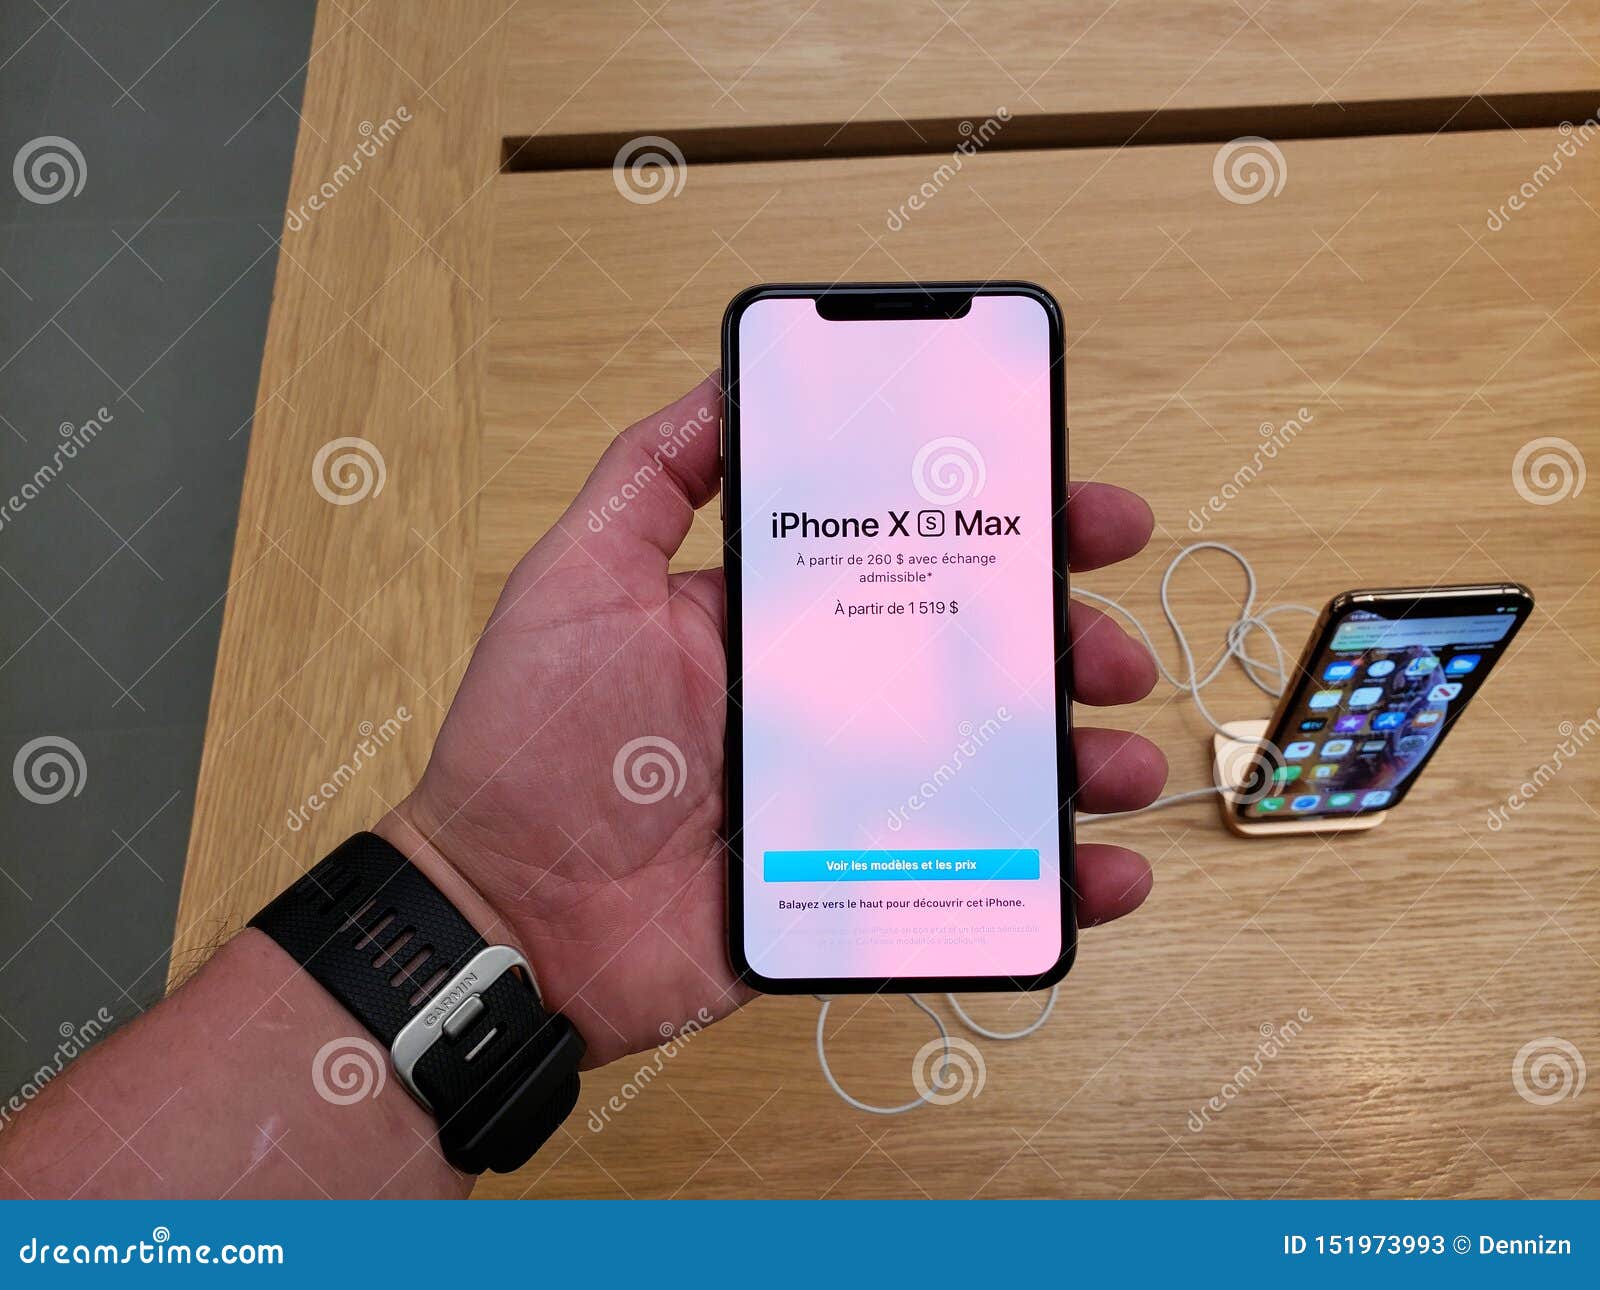 iPhone XS Max trên tay: Một cảm giác mới lạ và thú vị khi cầm trên tay chiếc smartphone cao cấp của Apple - iPhone XS Max. Bạn sẽ có cơ hội chiêm ngưỡng thiết kế tinh tế cùng với những tính năng đáng ngạc nhiên của chiếc điện thoại này. Hãy thử cảm giác hiện đại và đầy thử thách này bằng việc xem bức ảnh iPhone XS Max trên tay nhé! 